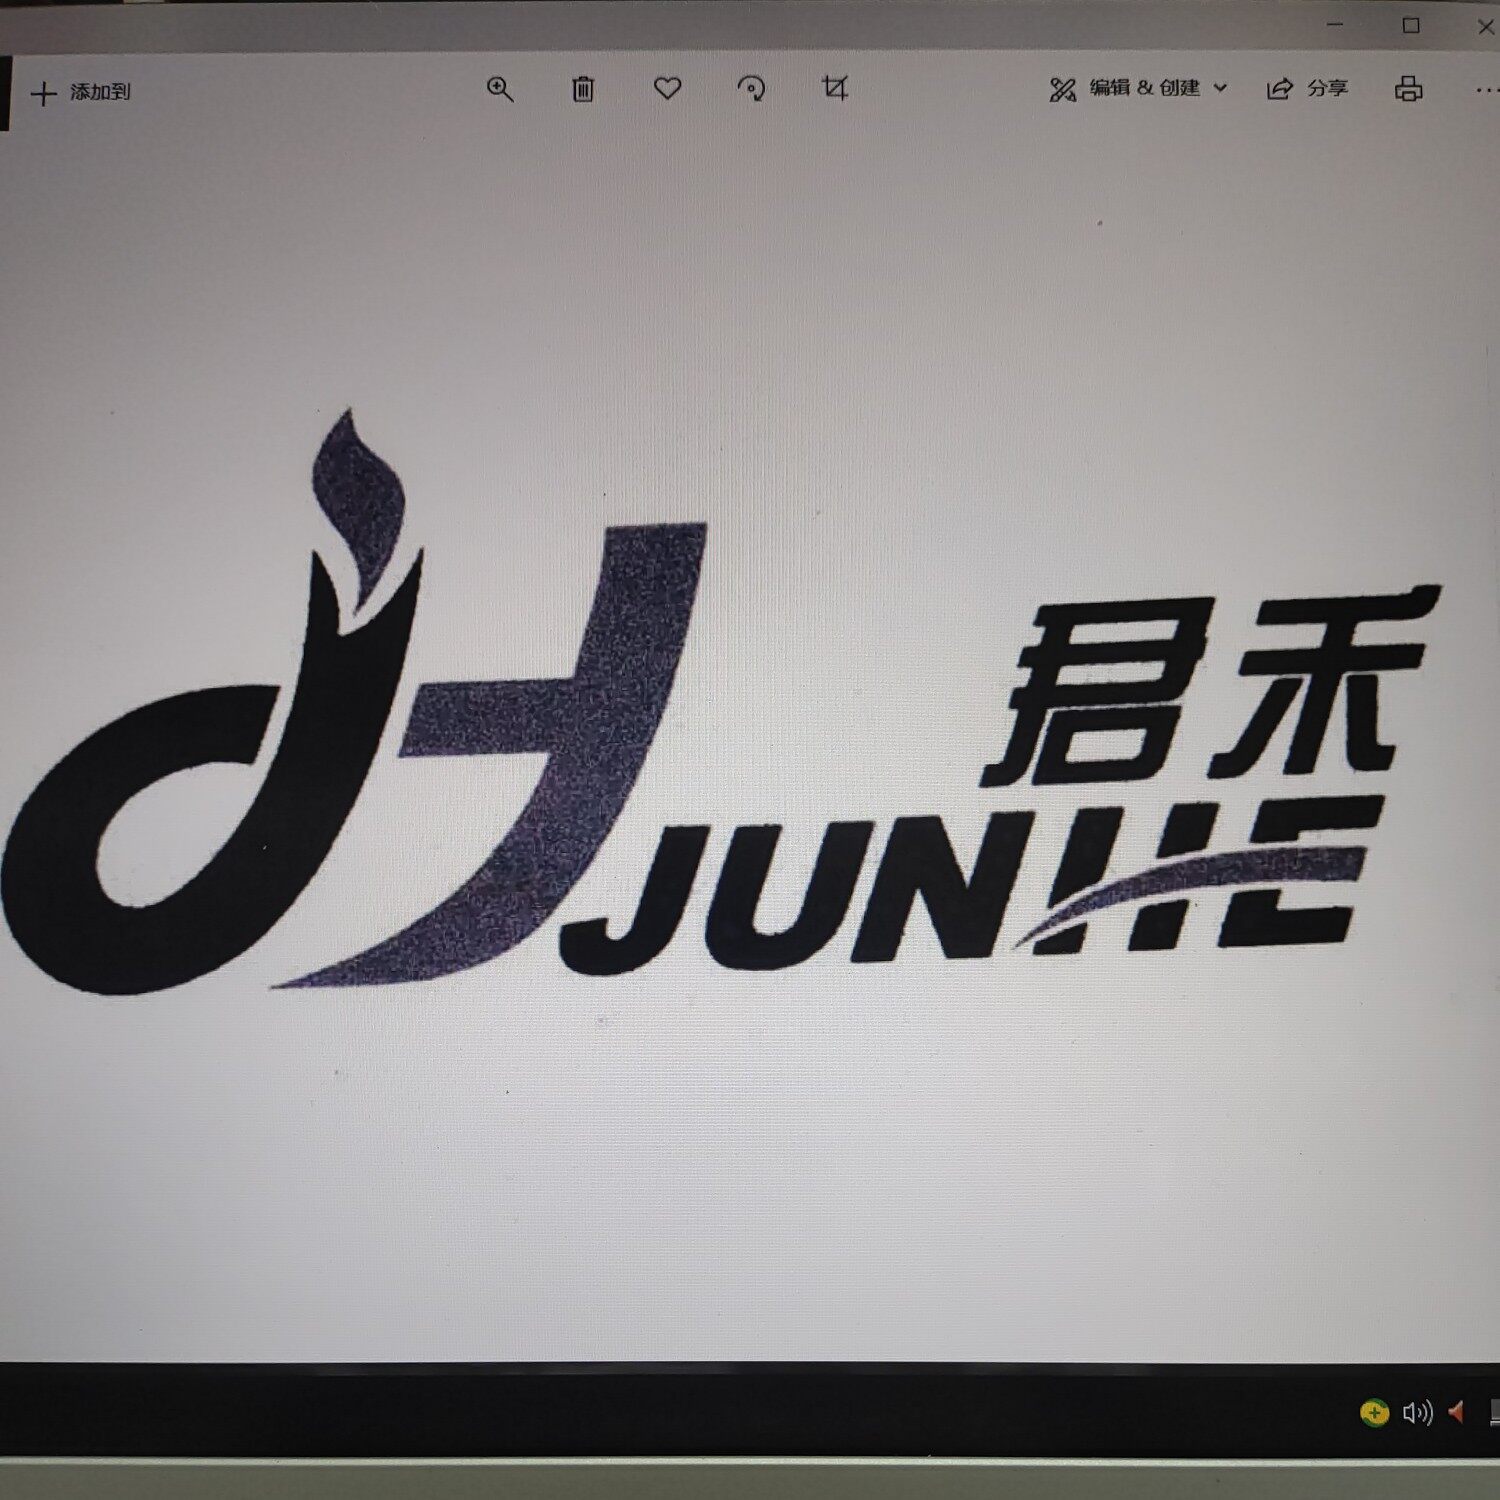 佳木斯君禾网络科技有限公司logo